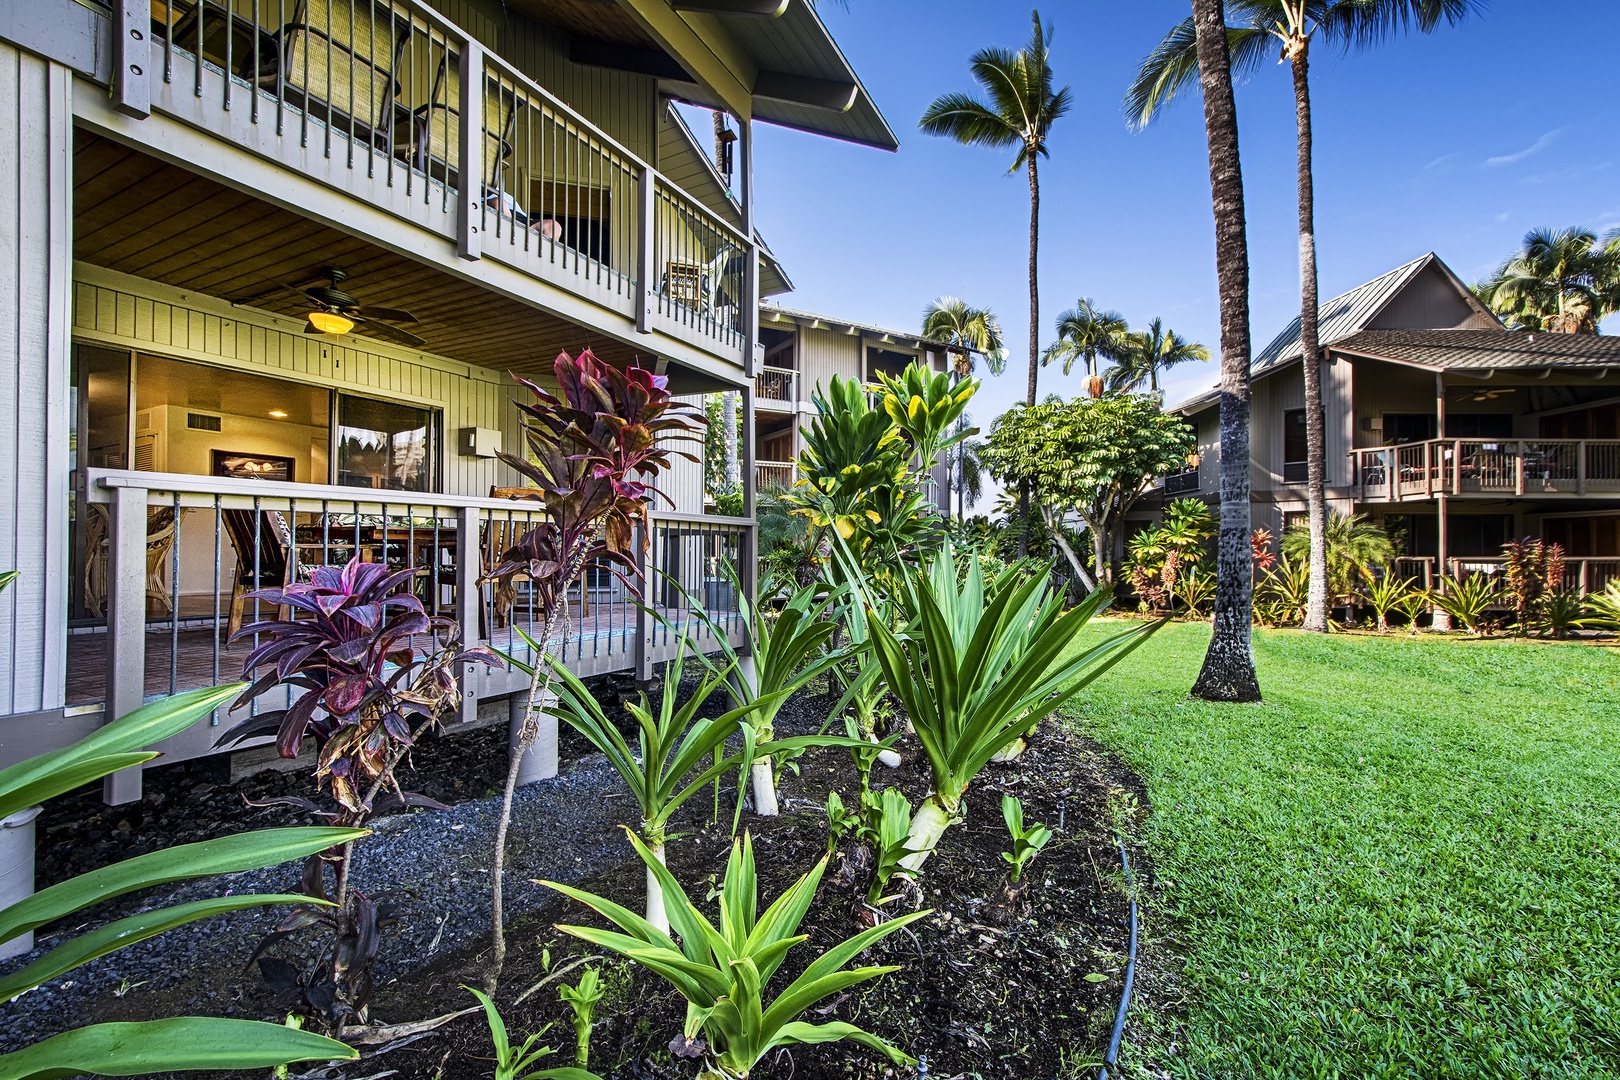 Kailua Kona Vacation Rentals, Kanaloa at Kona 701 - You'll love the extensive list of outdoor amenities at Kanaloa